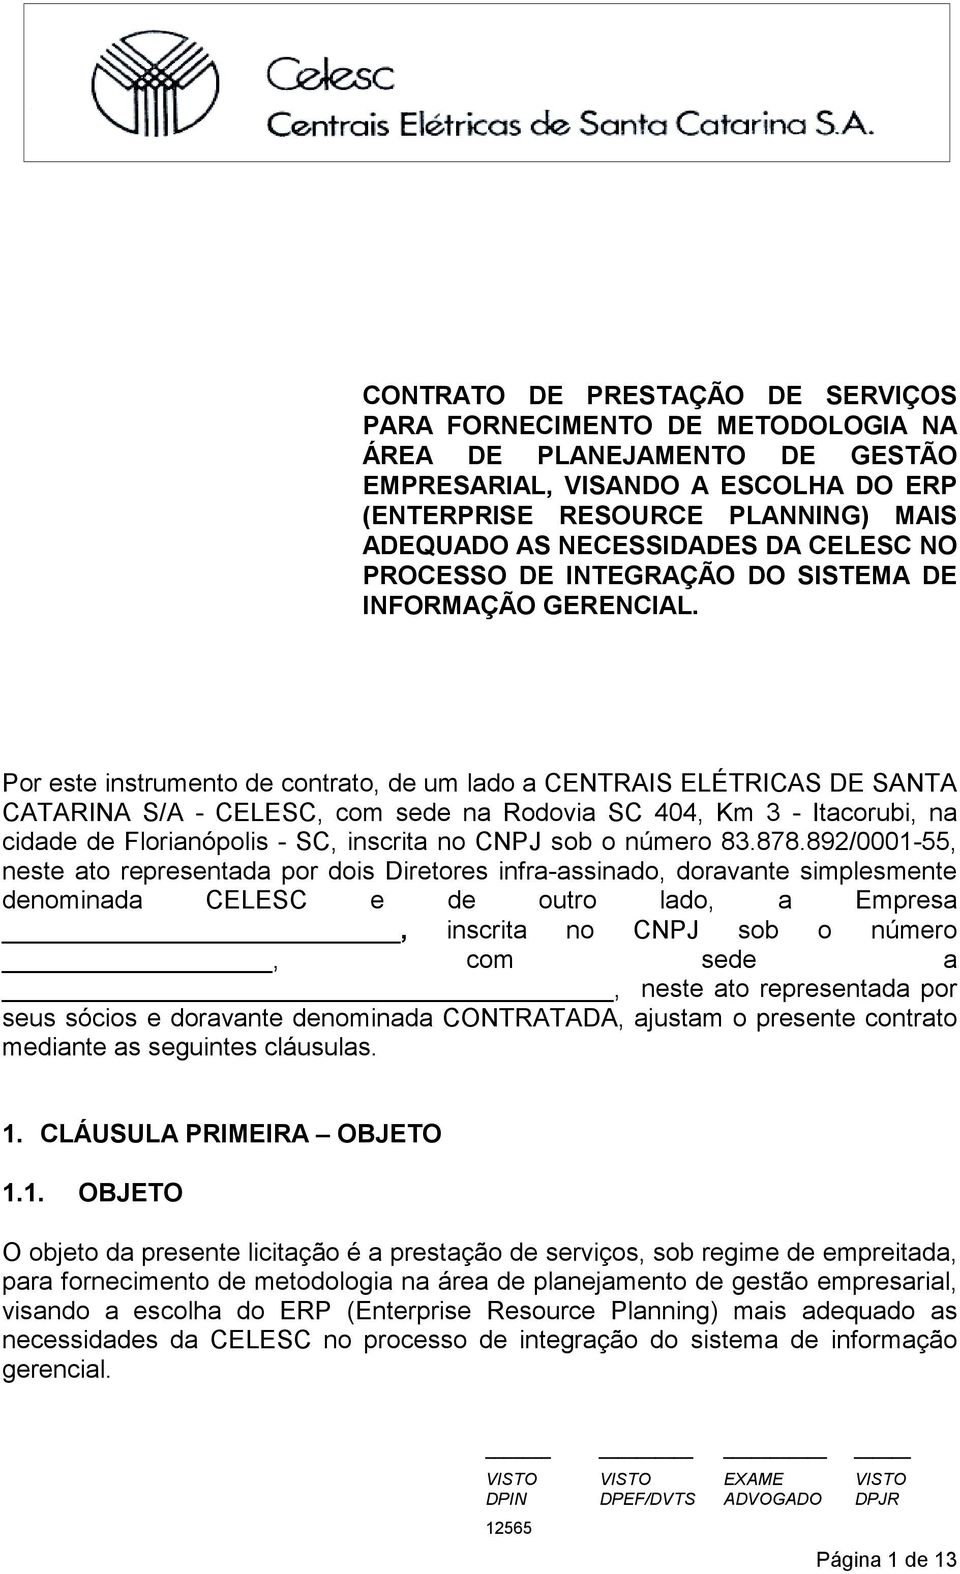 Por este instrumento de contrato, de um lado a CENTRAIS ELÉTRICAS DE SANTA CATARINA S/A - CELESC, com sede na Rodovia SC 404, Km 3 - Itacorubi, na cidade de Florianópolis - SC, inscrita no CNPJ sob o